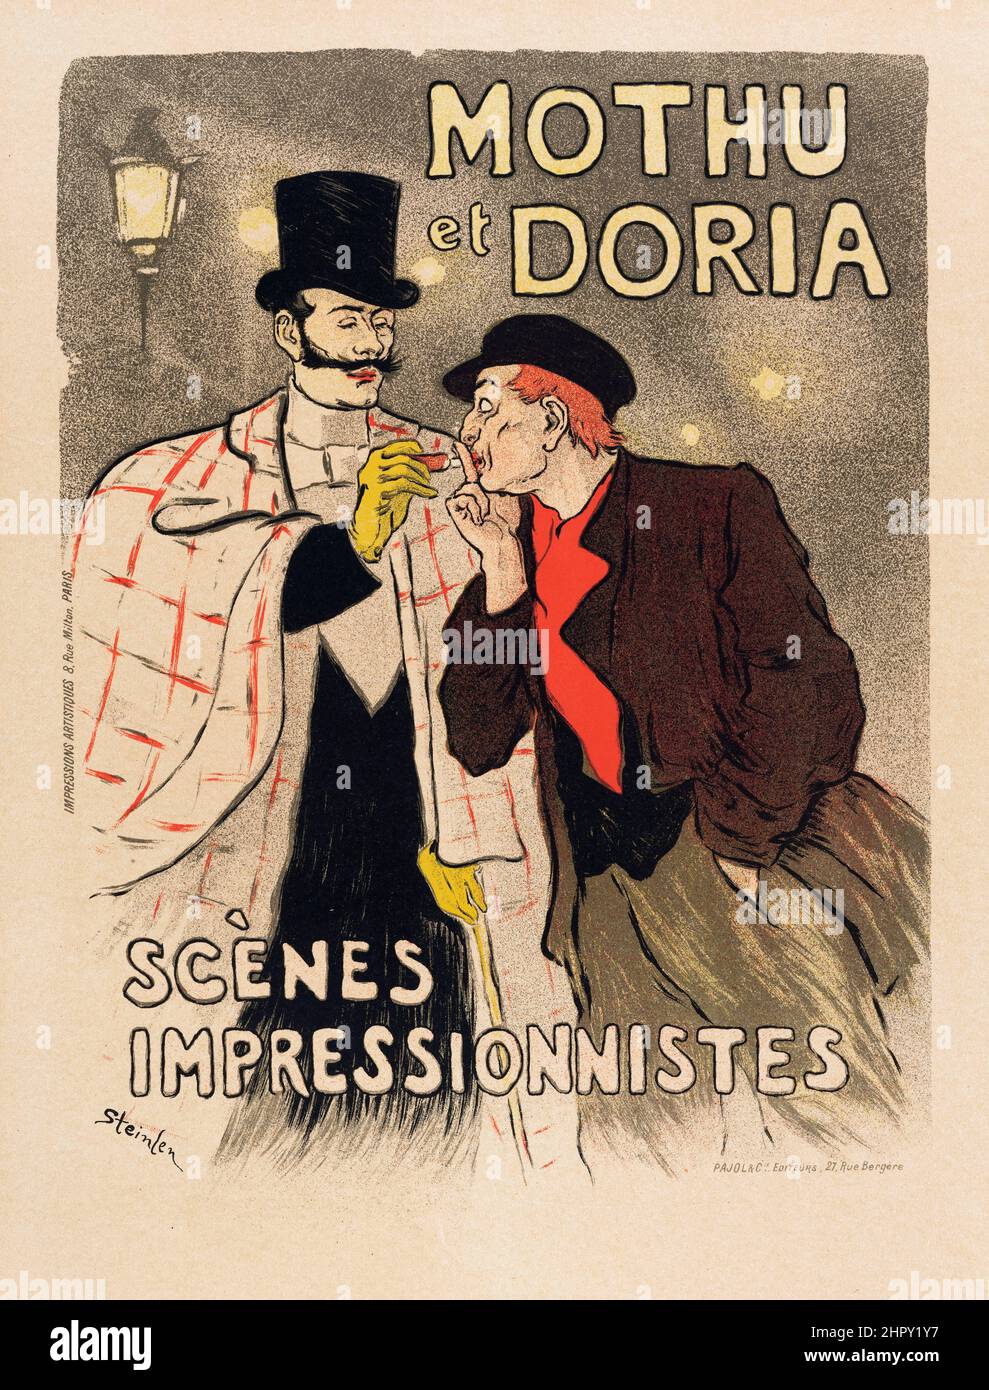 MOTHU ET DORIA, Scènes impressionnistes. Les Maitres de l'Affiche Plate 46. Théophile-Alexandre STEINLEN, 1896. Stock Photo